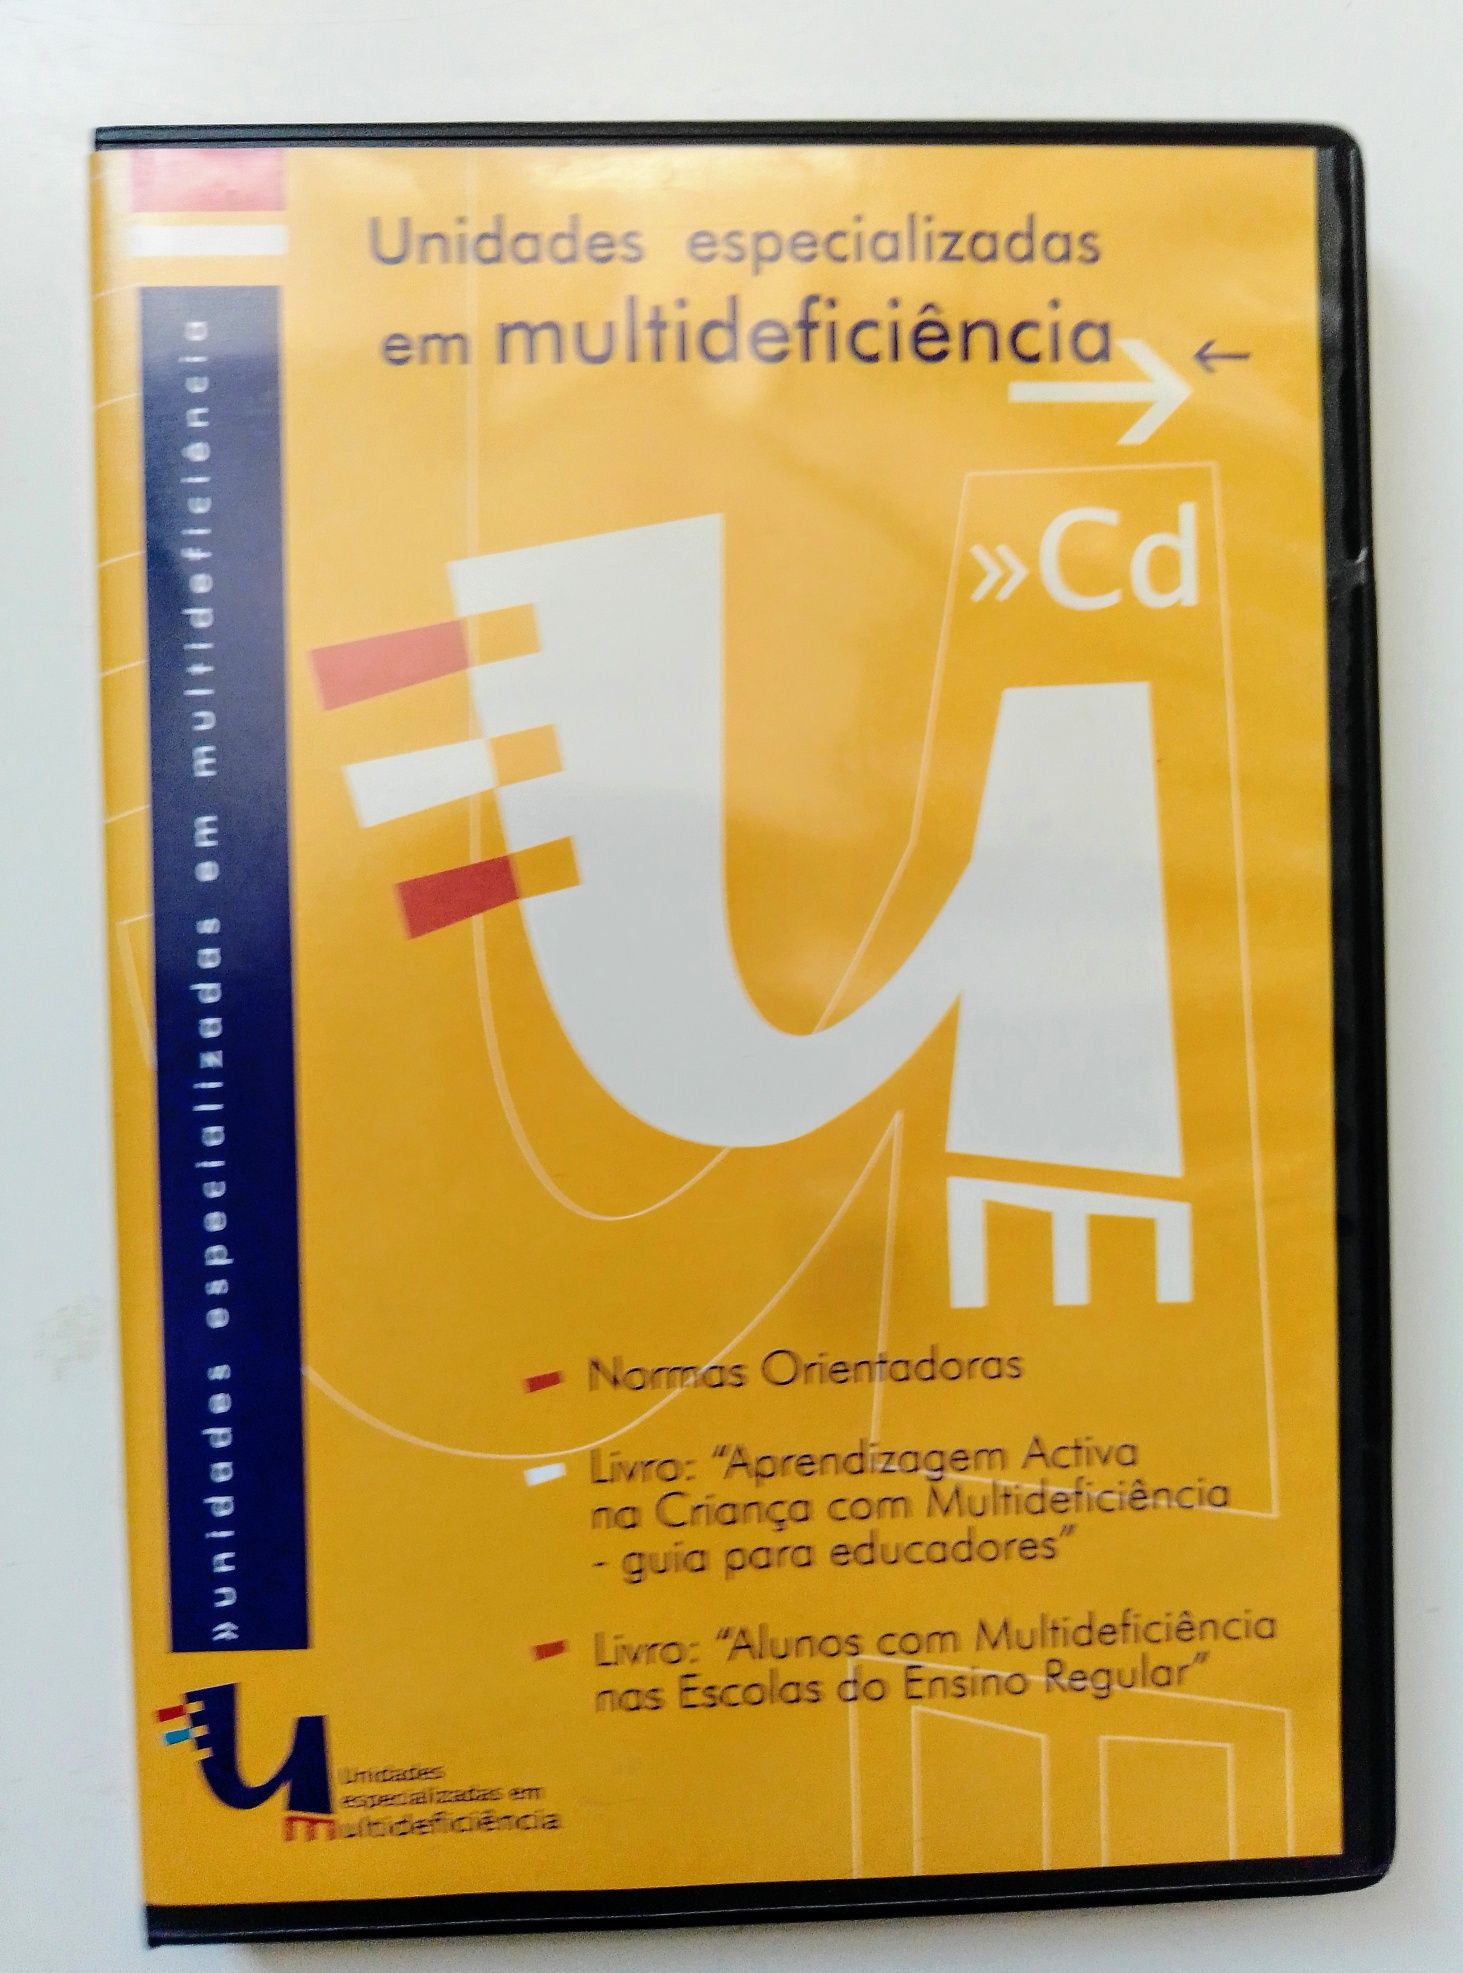 CD Unidades especializadas em multideficiencia.